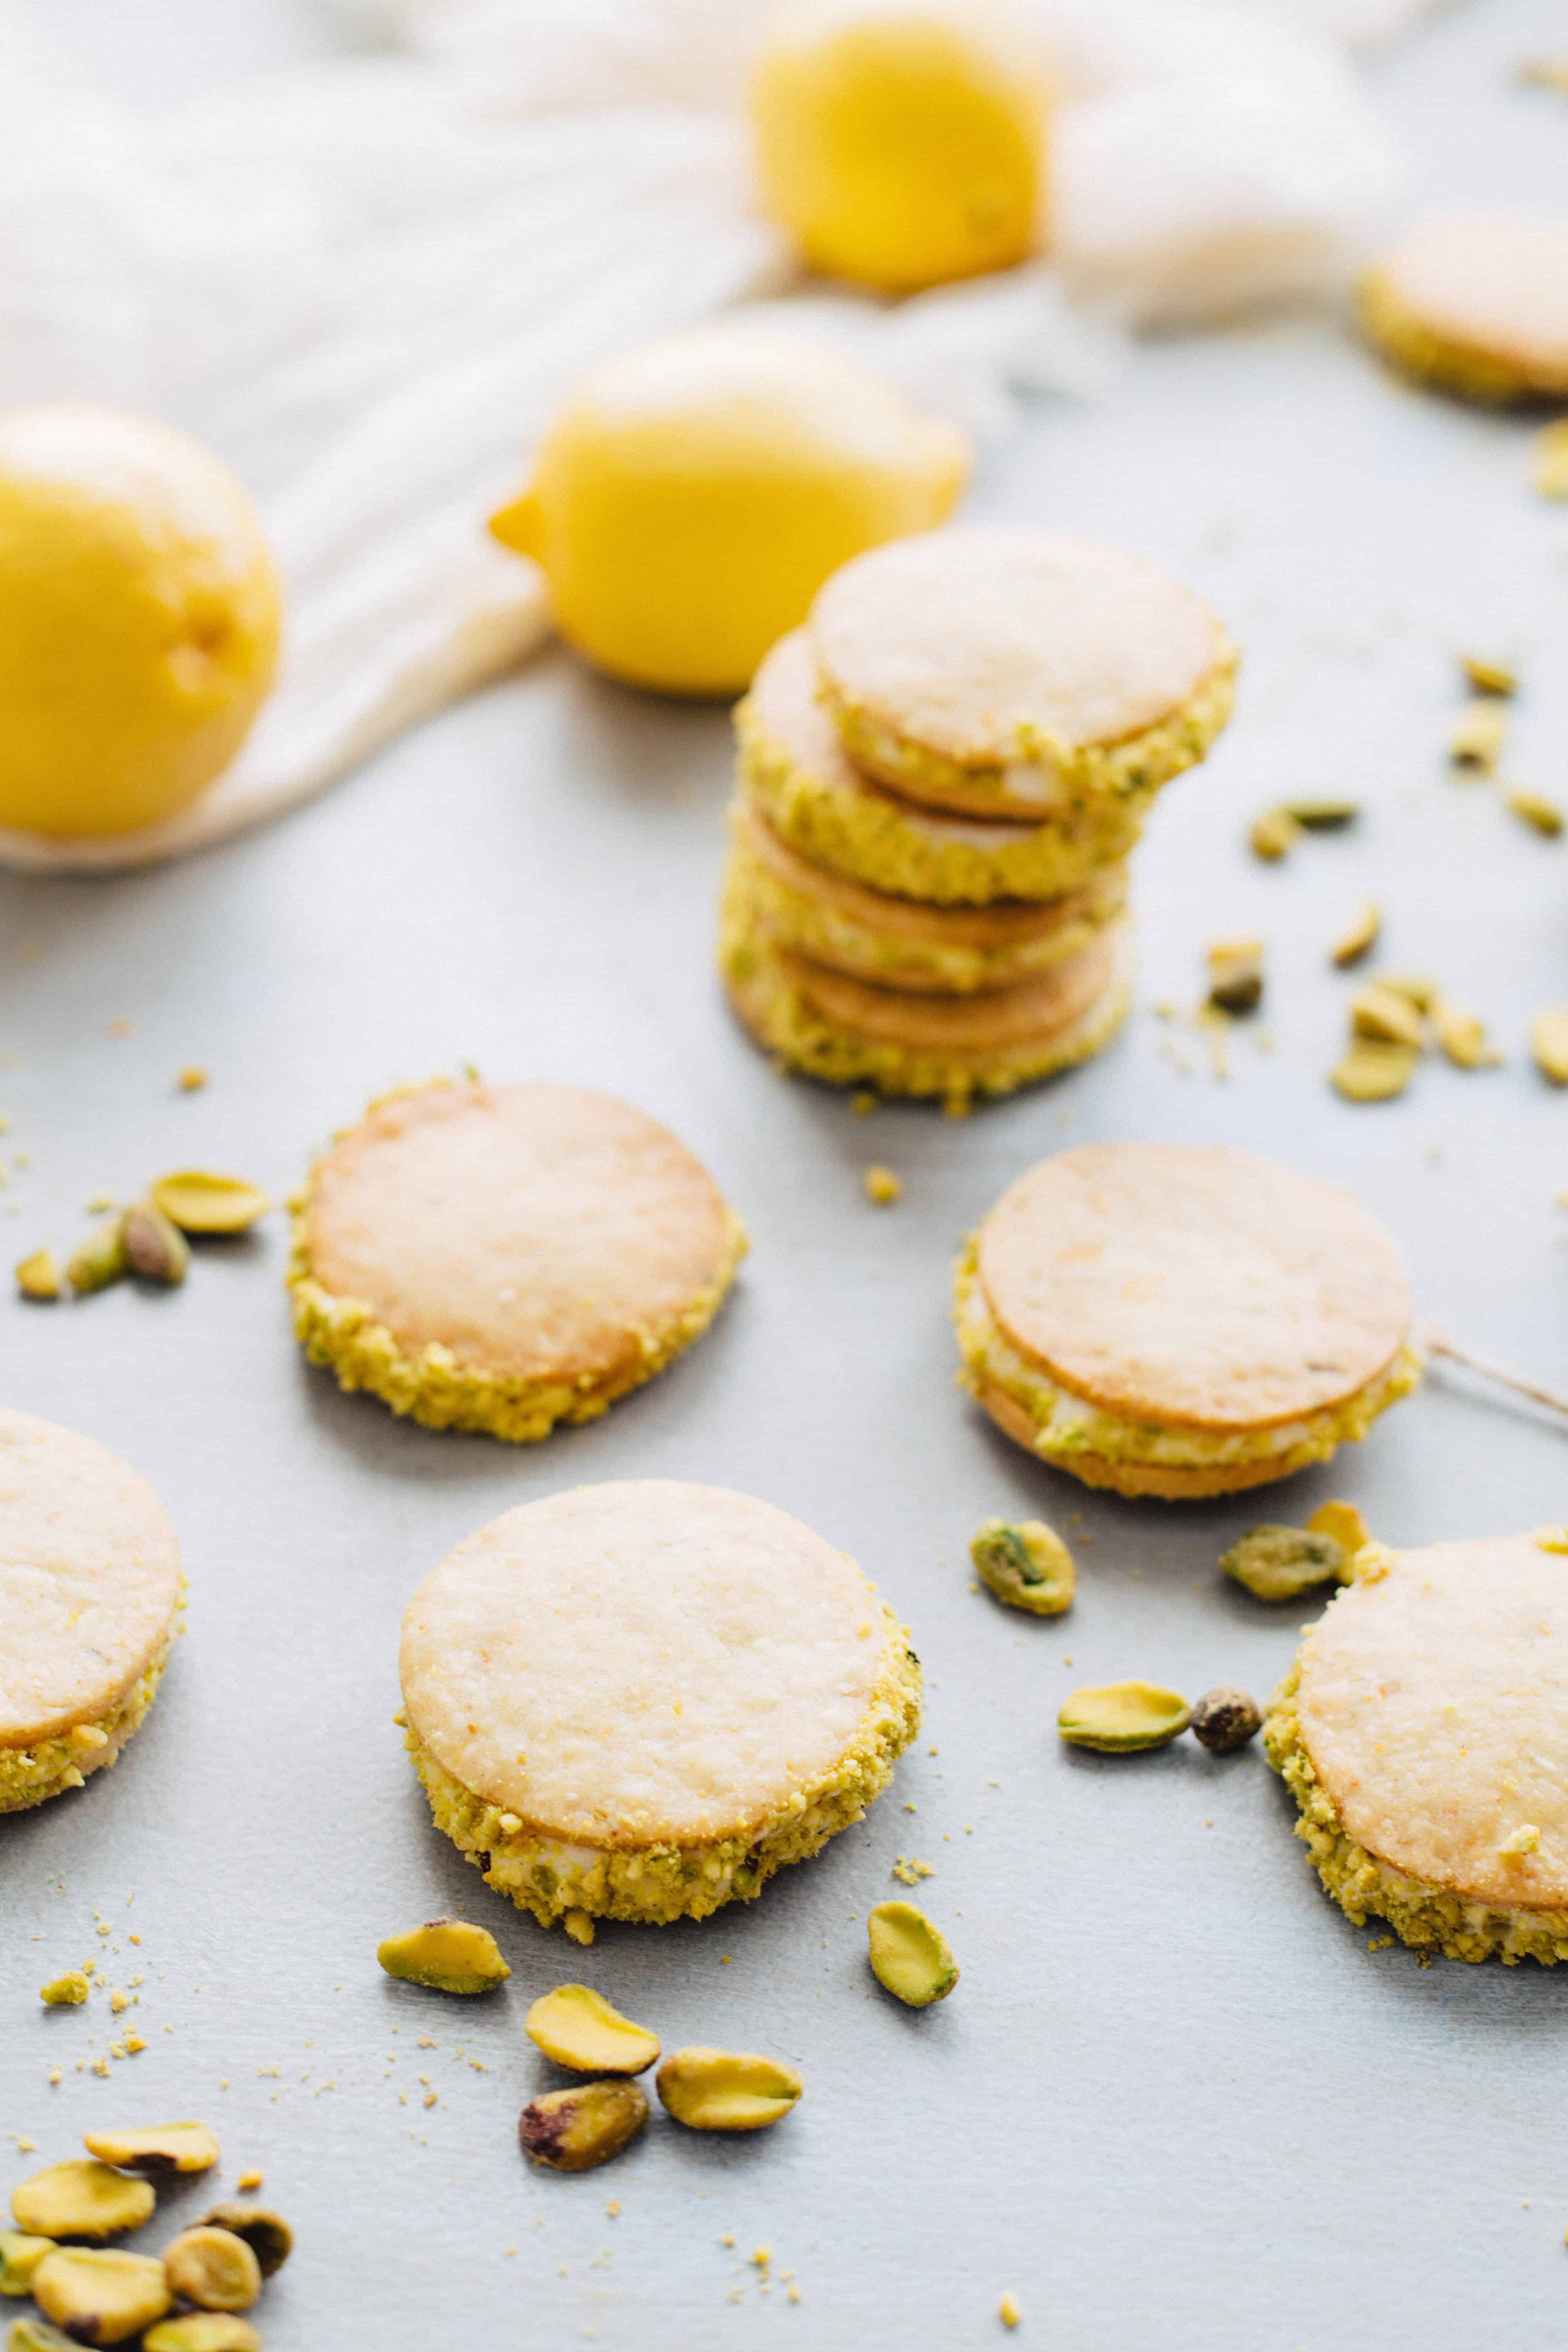 Lemon pistachio sandwich cookies assembled on a counter.